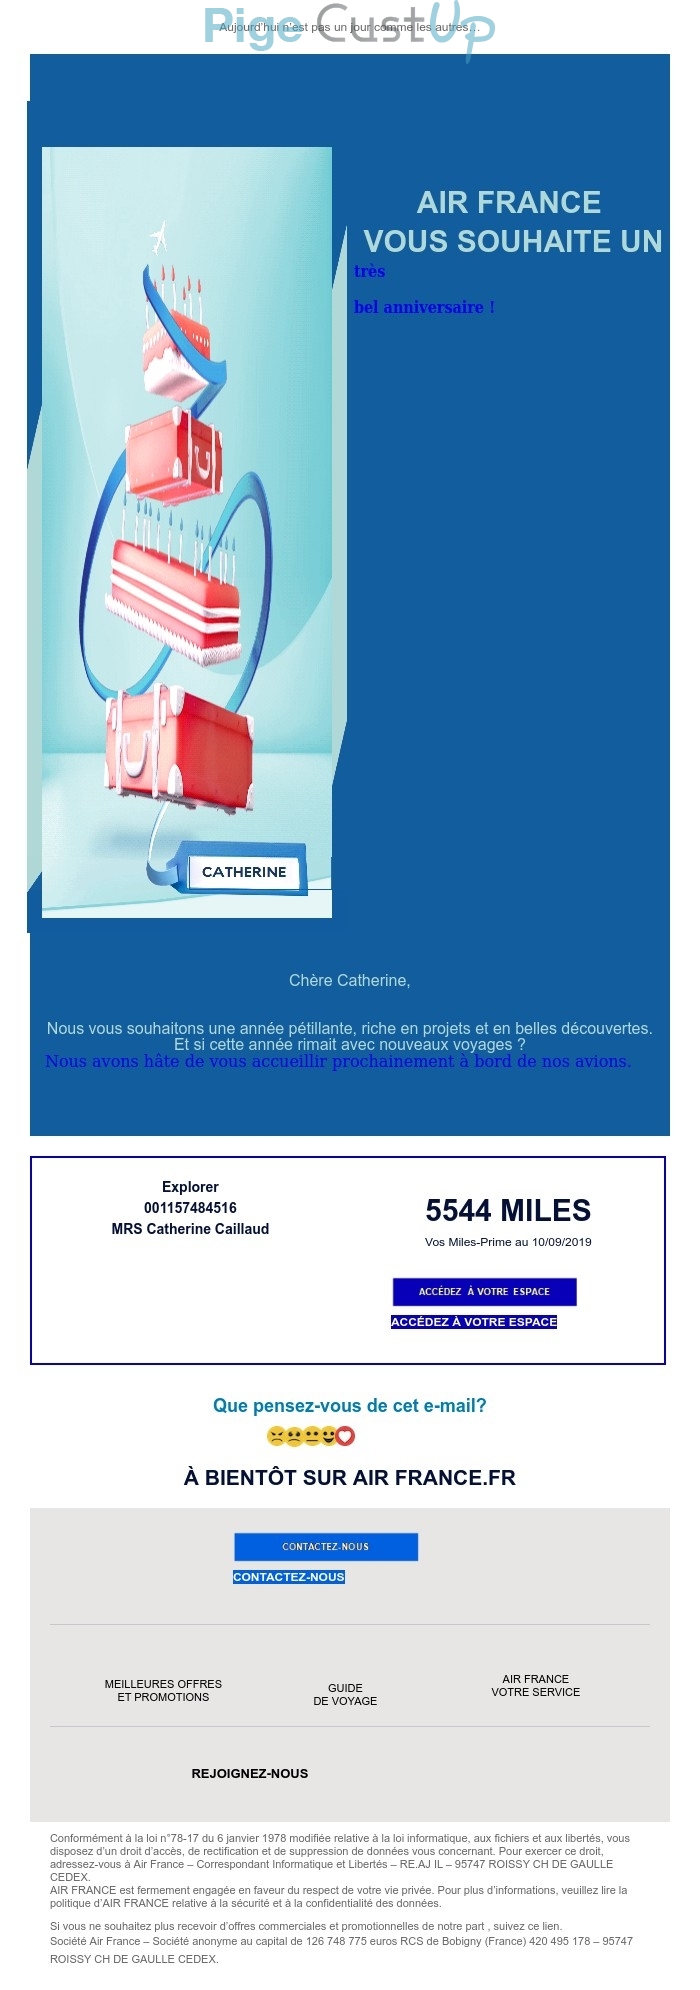 Exemple de Type de media  e-mailing - Air France - Marketing relationnel - Anniversaire / Fête contact